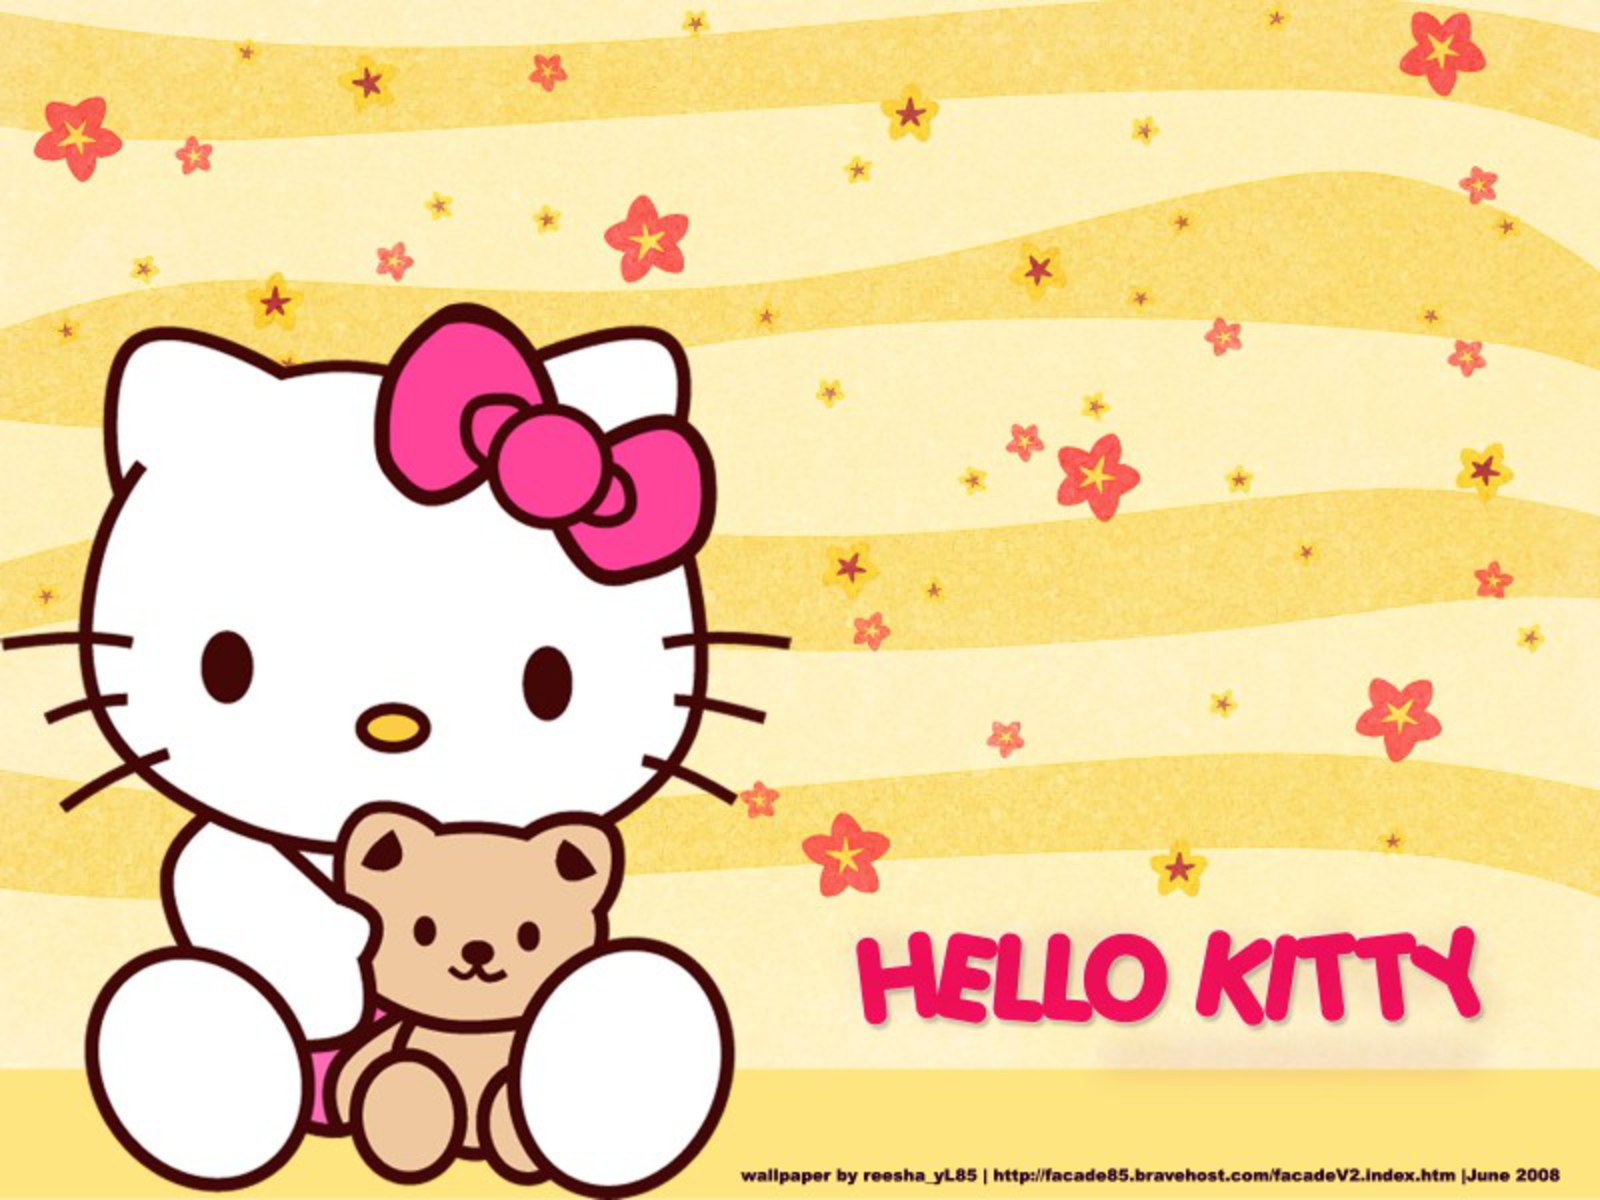 Hình nền Hello Kitty đáng yêu sẽ làm cho màn hình điện thoại của bạn thêm phần dễ thương và ngọt ngào. Hãy xem bức ảnh để thấy sức hút của chú mèo nhỏ đáng yêu này trên nền hình nền của bạn!